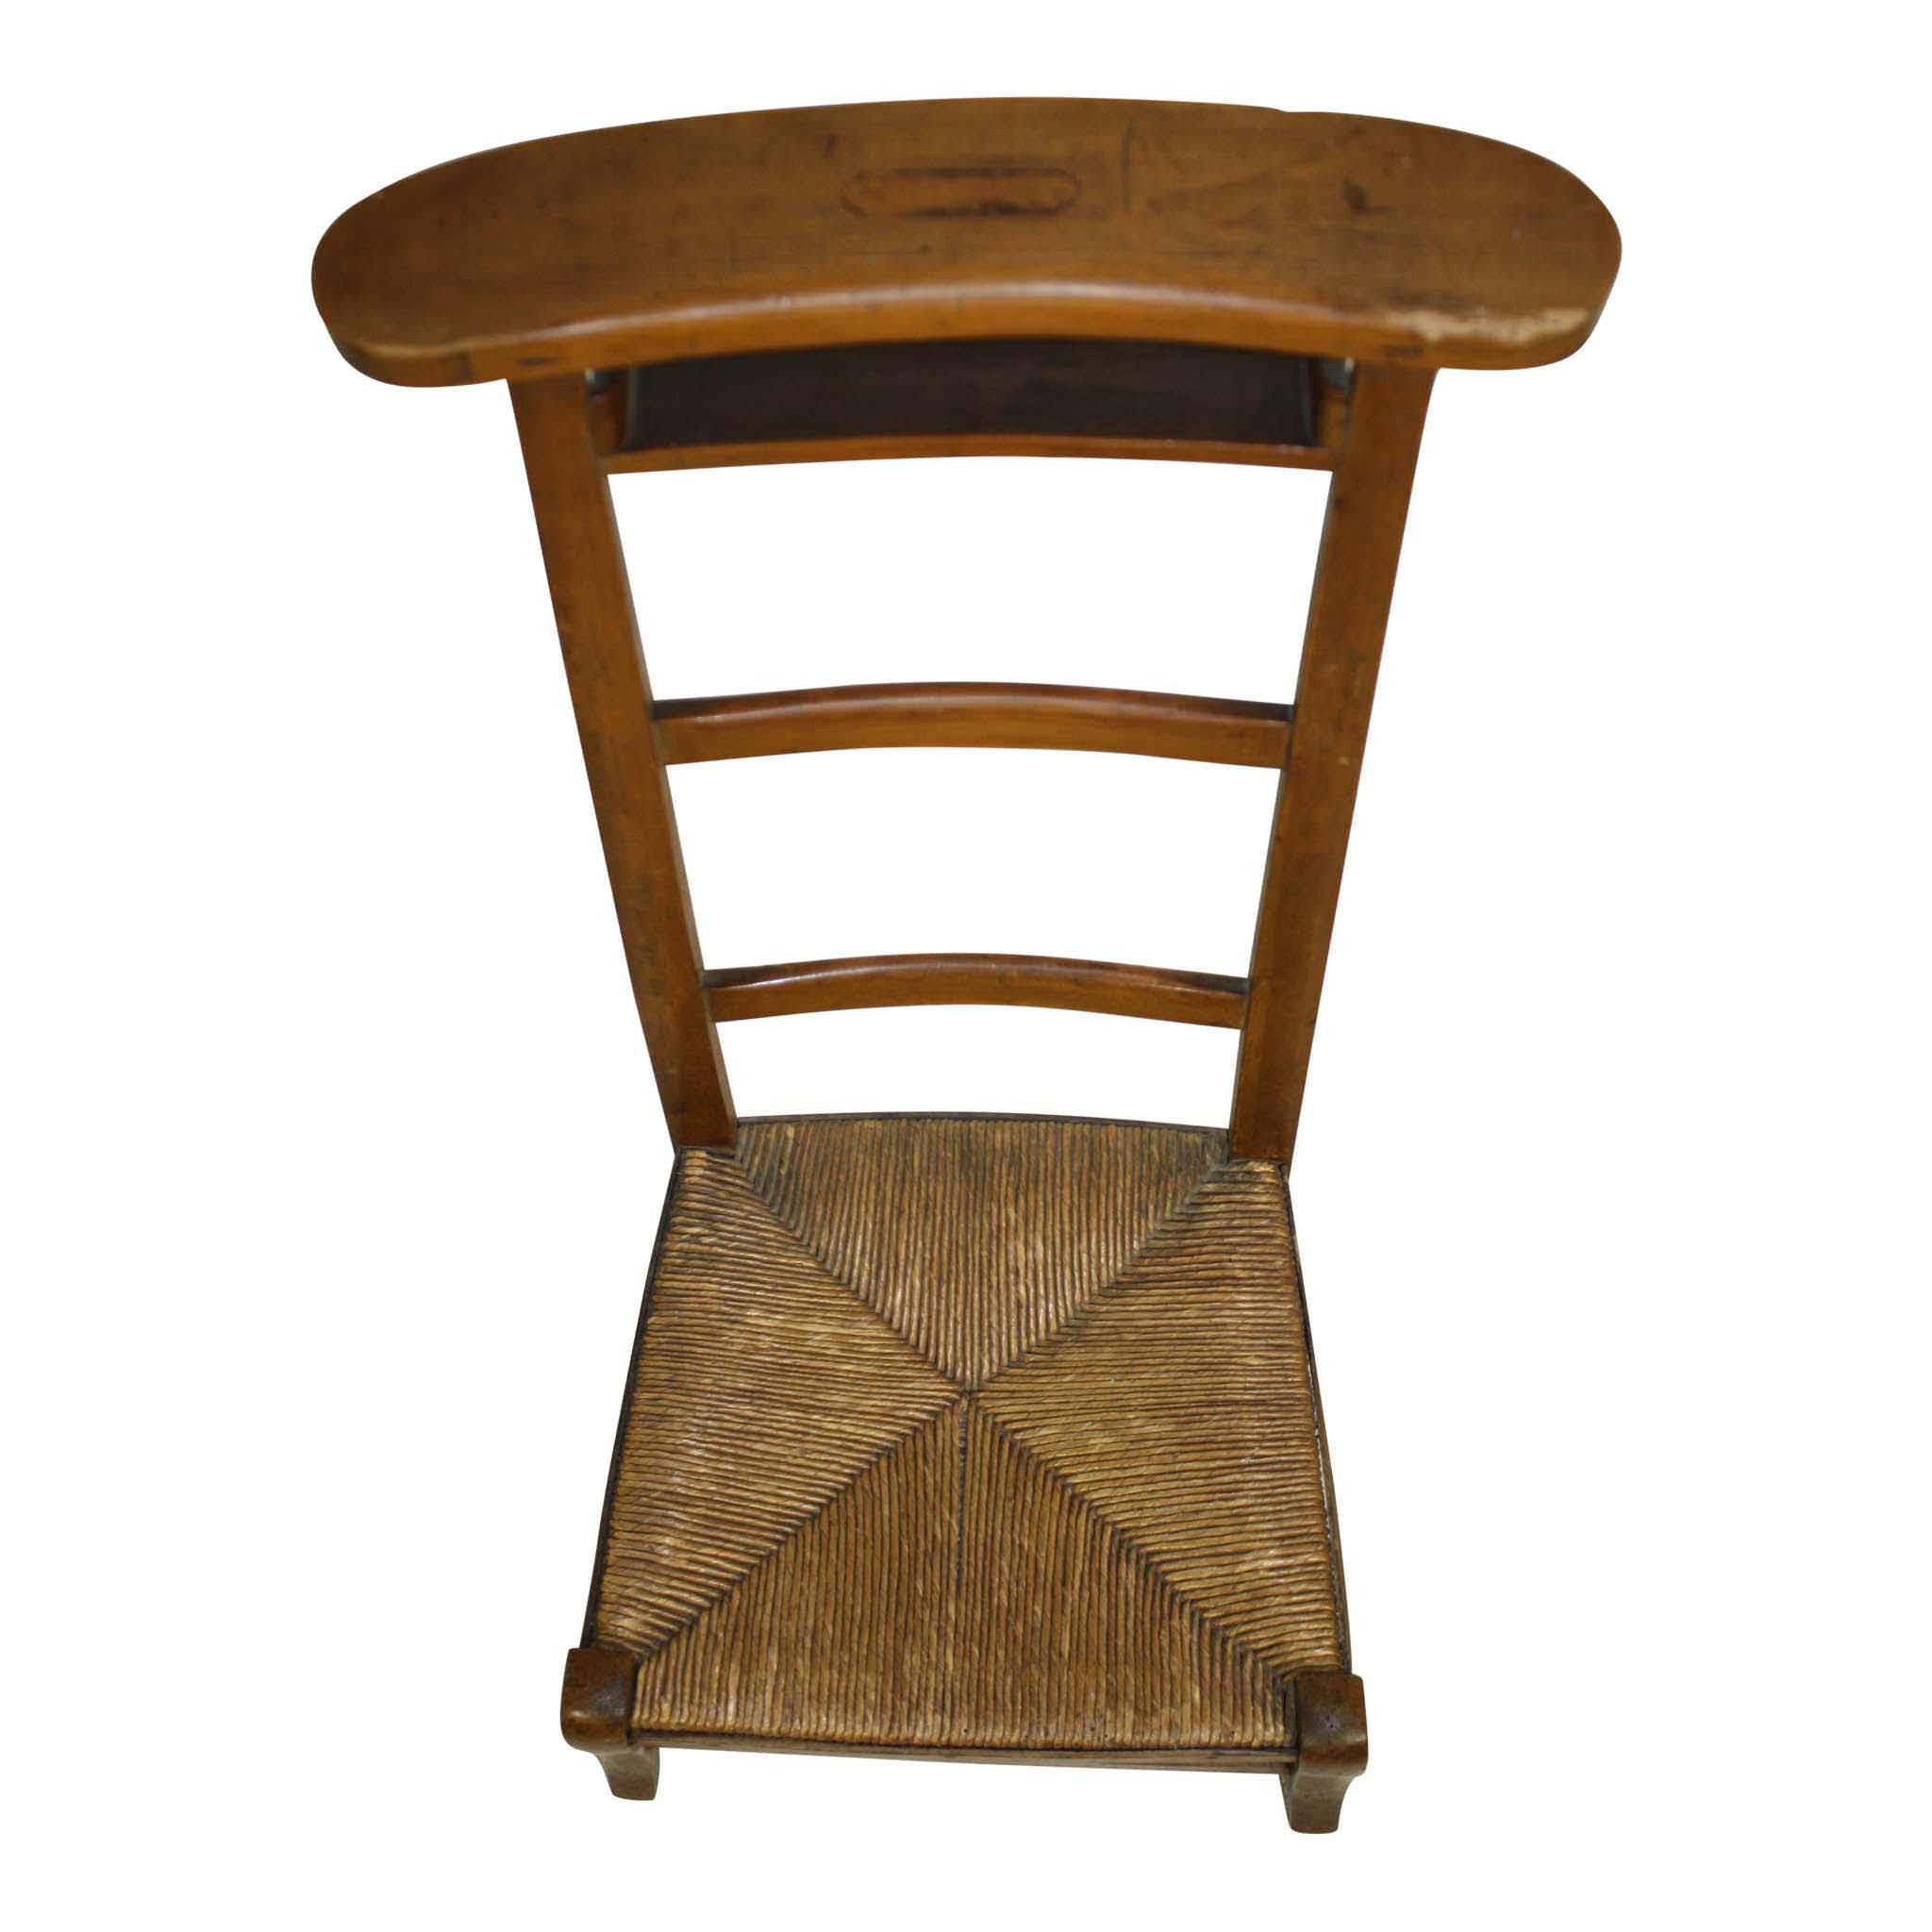 French Prayer Chair